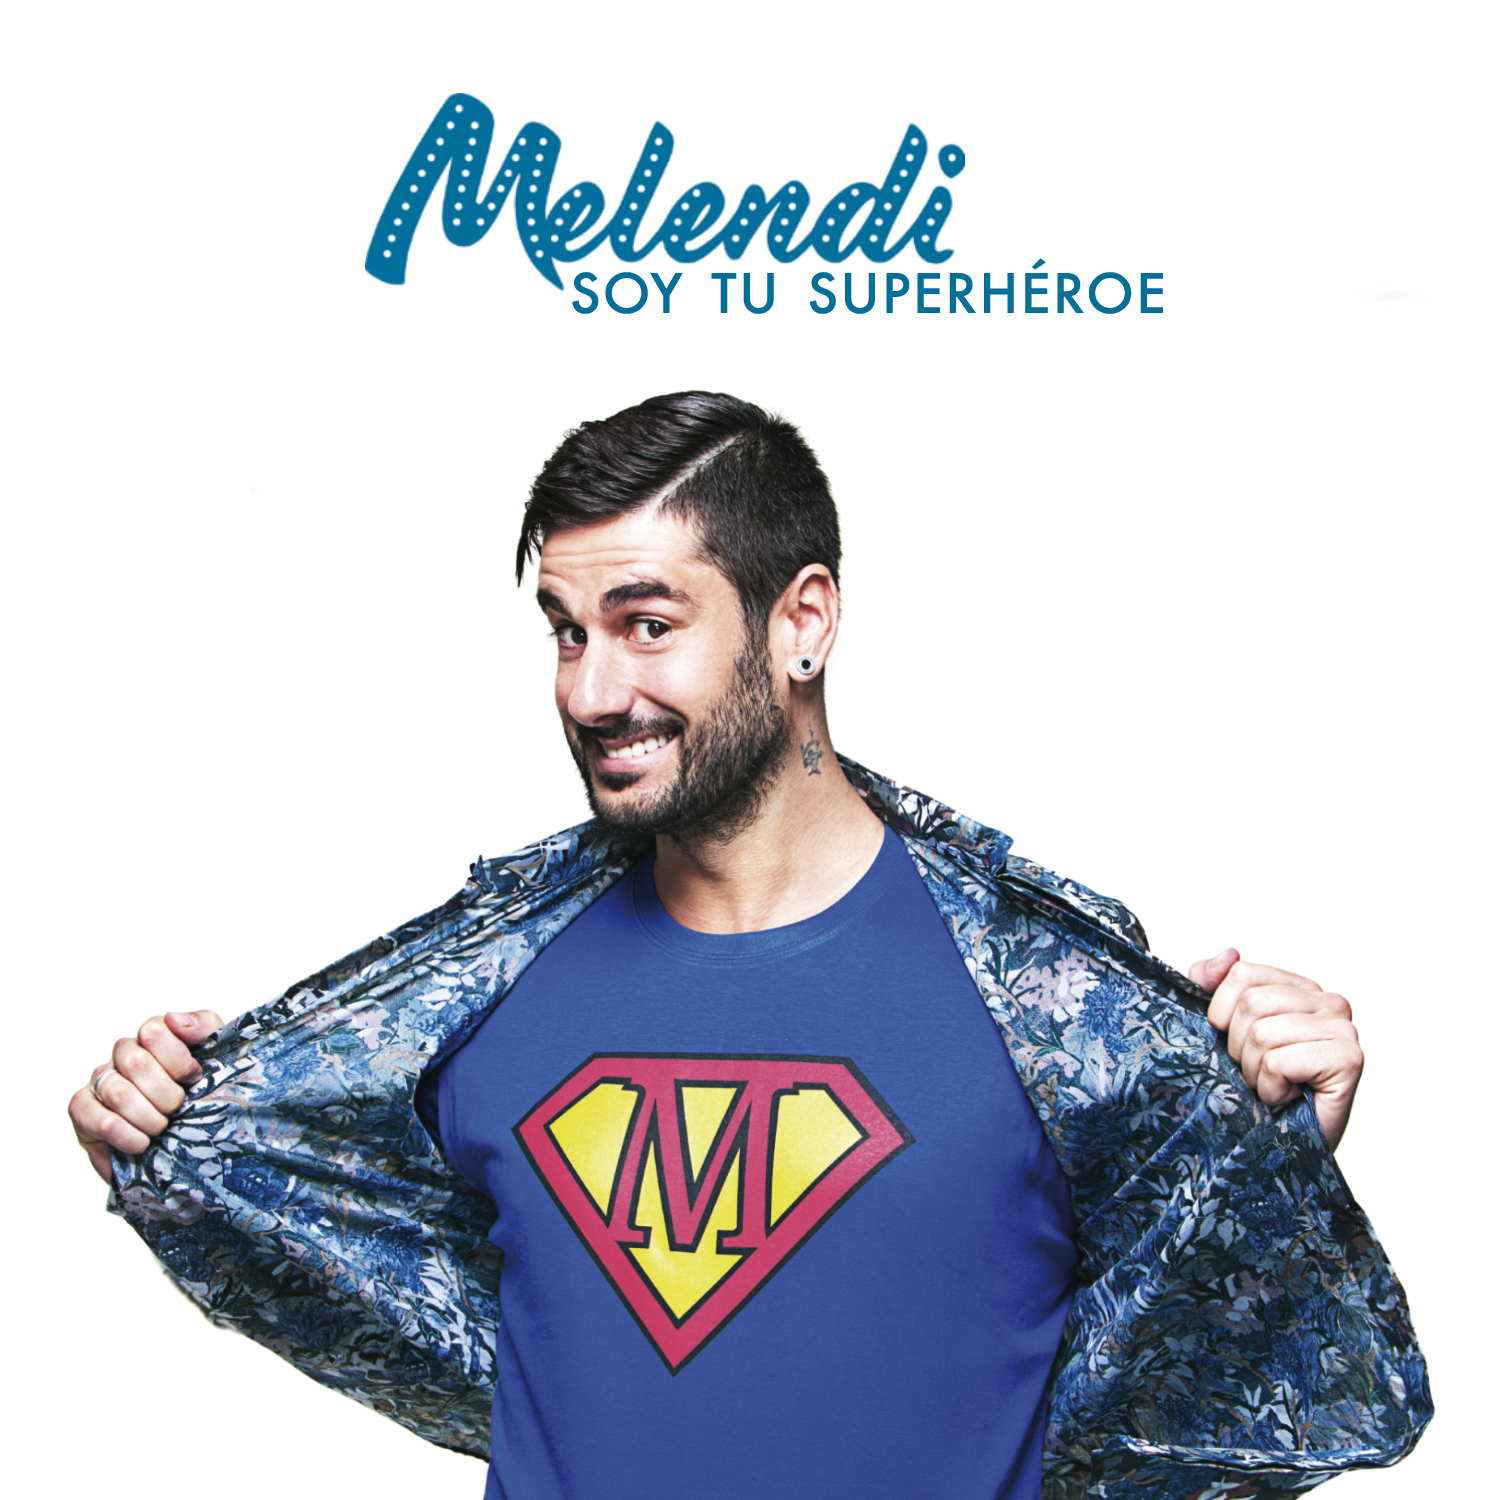 Melendi publica hoy “Soy tu superhéroe”, nuevo avance de “Quítate las gafas”